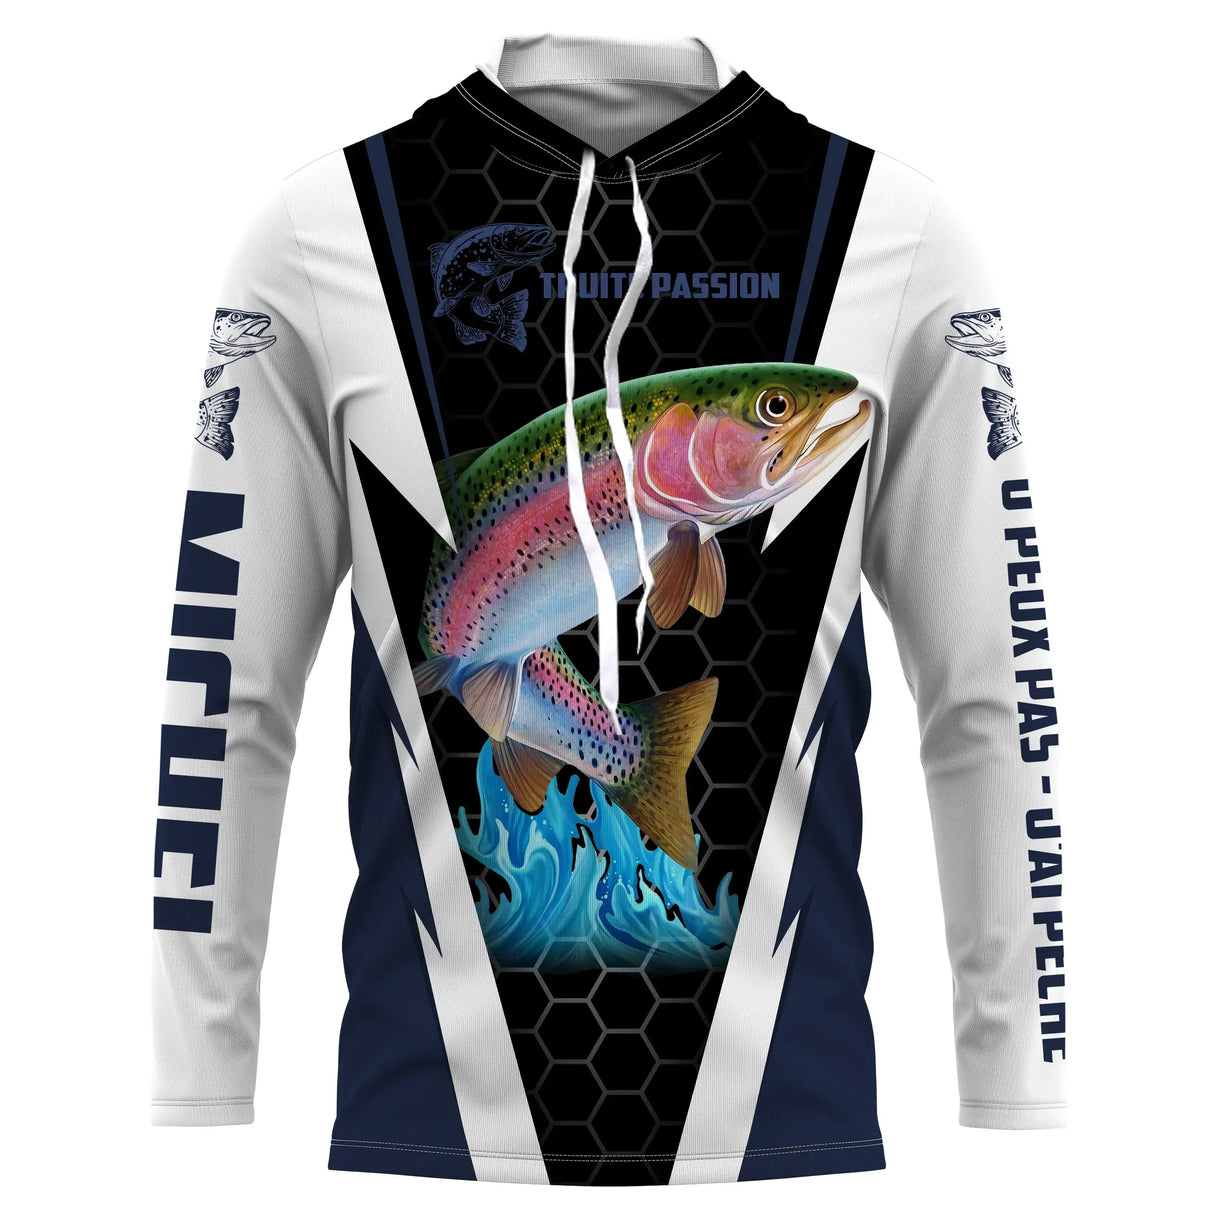 Forellenangeln T-Shirt, personalisiertes Fischergeschenk, Forellenleidenschaft - CT08072221